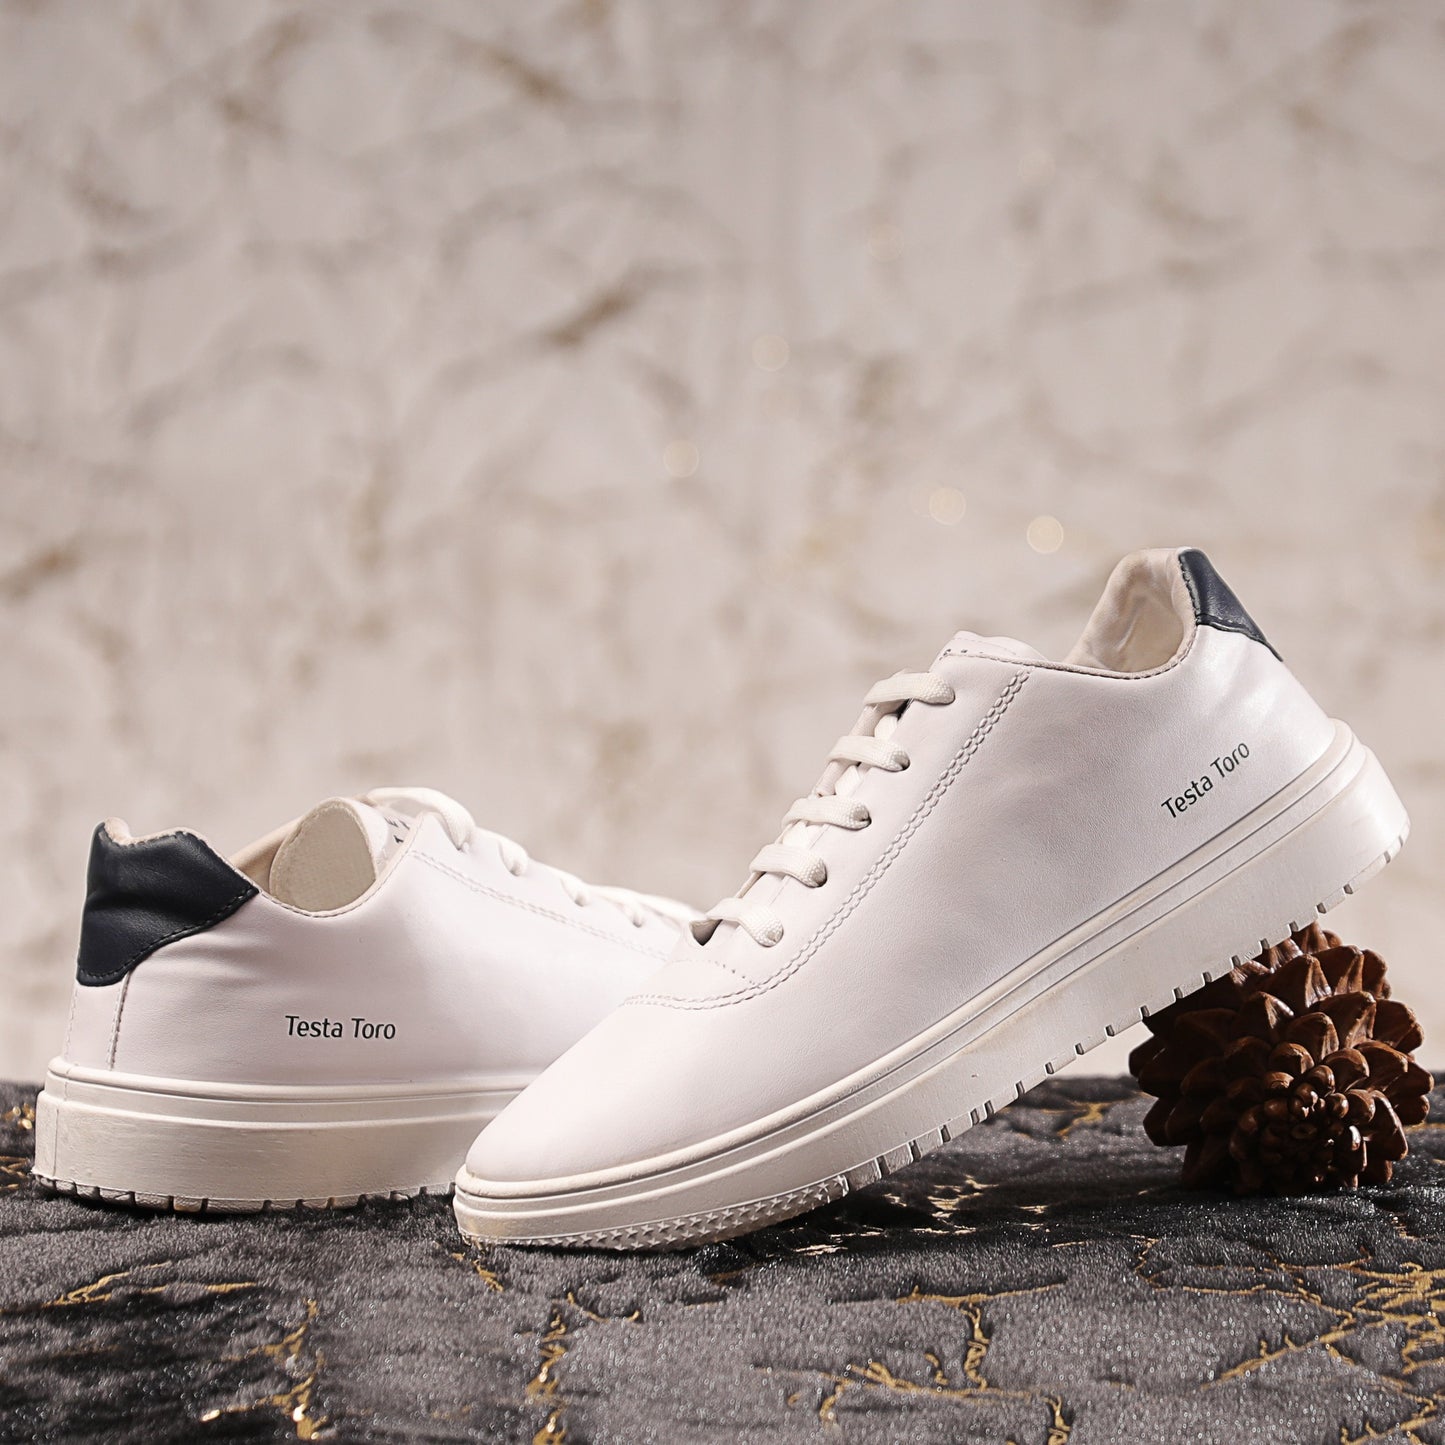 حذاء سنيكر اساسي بتصميم بسيط من الجلد المعالج والمبطن مزود بفرش فوم داعم لكعب القدم من X2